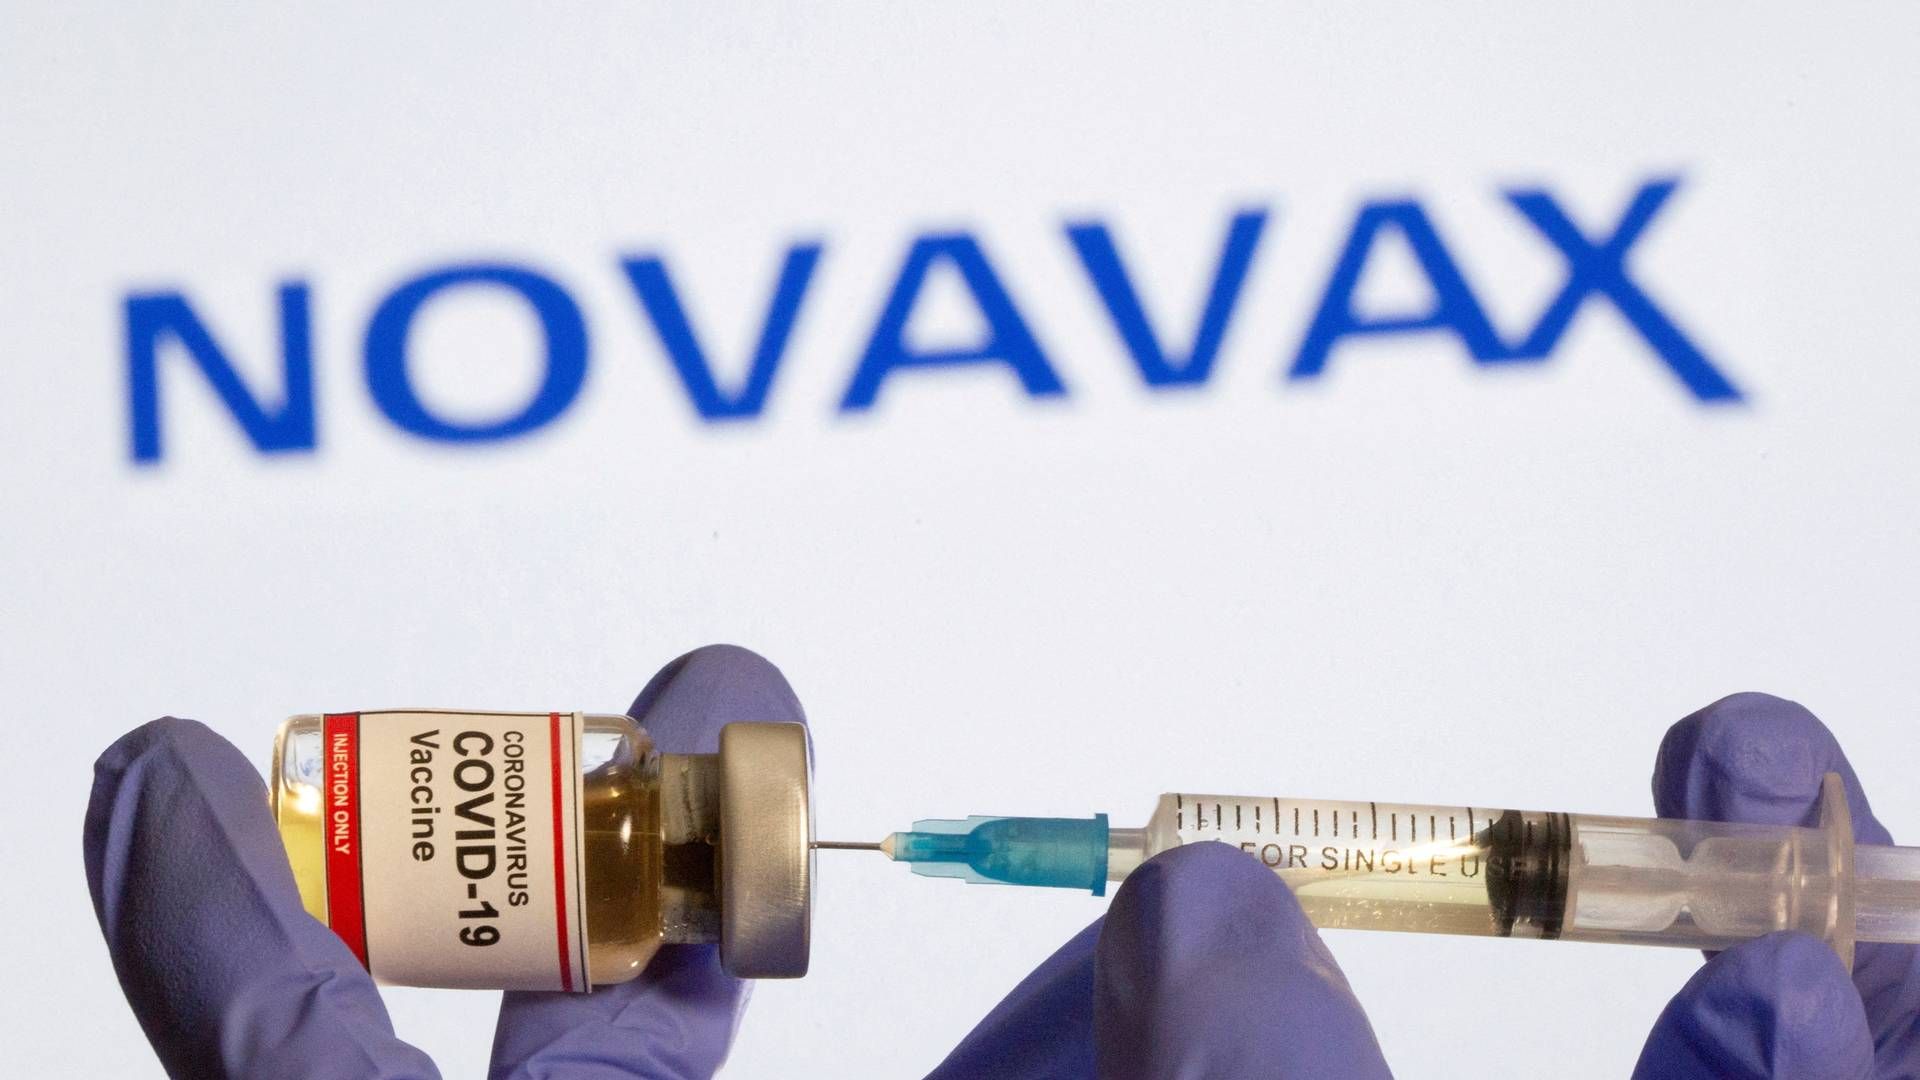 Novavax producerer proteinbaserede vacciner, og dets nyeste vaccine burde i følge virksomhedens forskning- og udviklingsdirektør beskytte mod hurtigt voksende varianter, der cirkulerer i USA. | Foto: Dado Ruvic